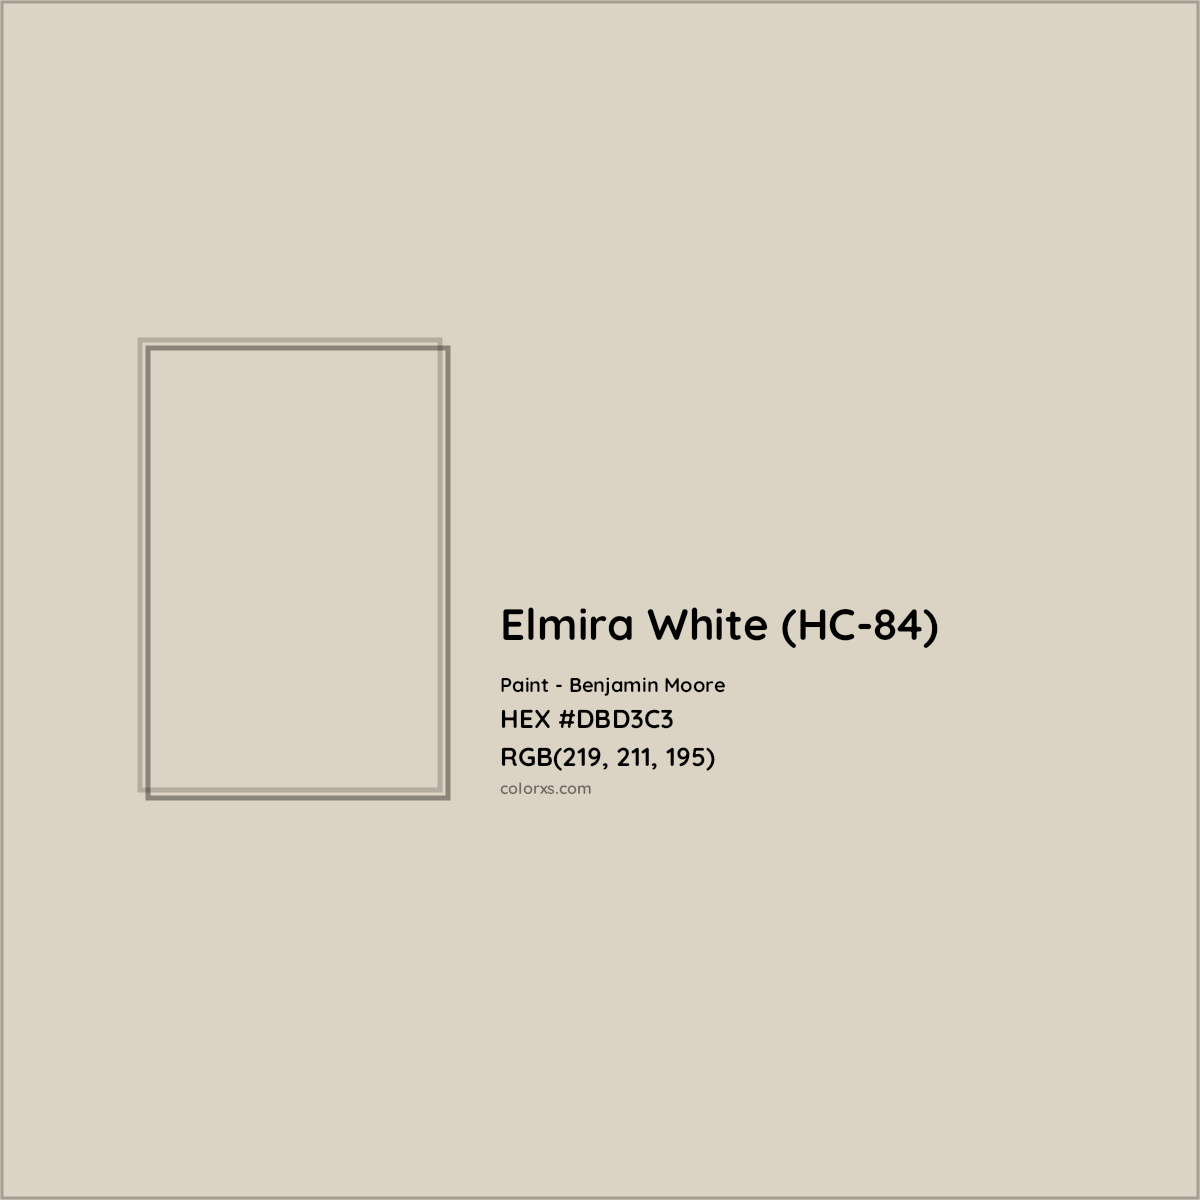 HEX #DBD3C3 Elmira White (HC-84) Paint Benjamin Moore - Color Code